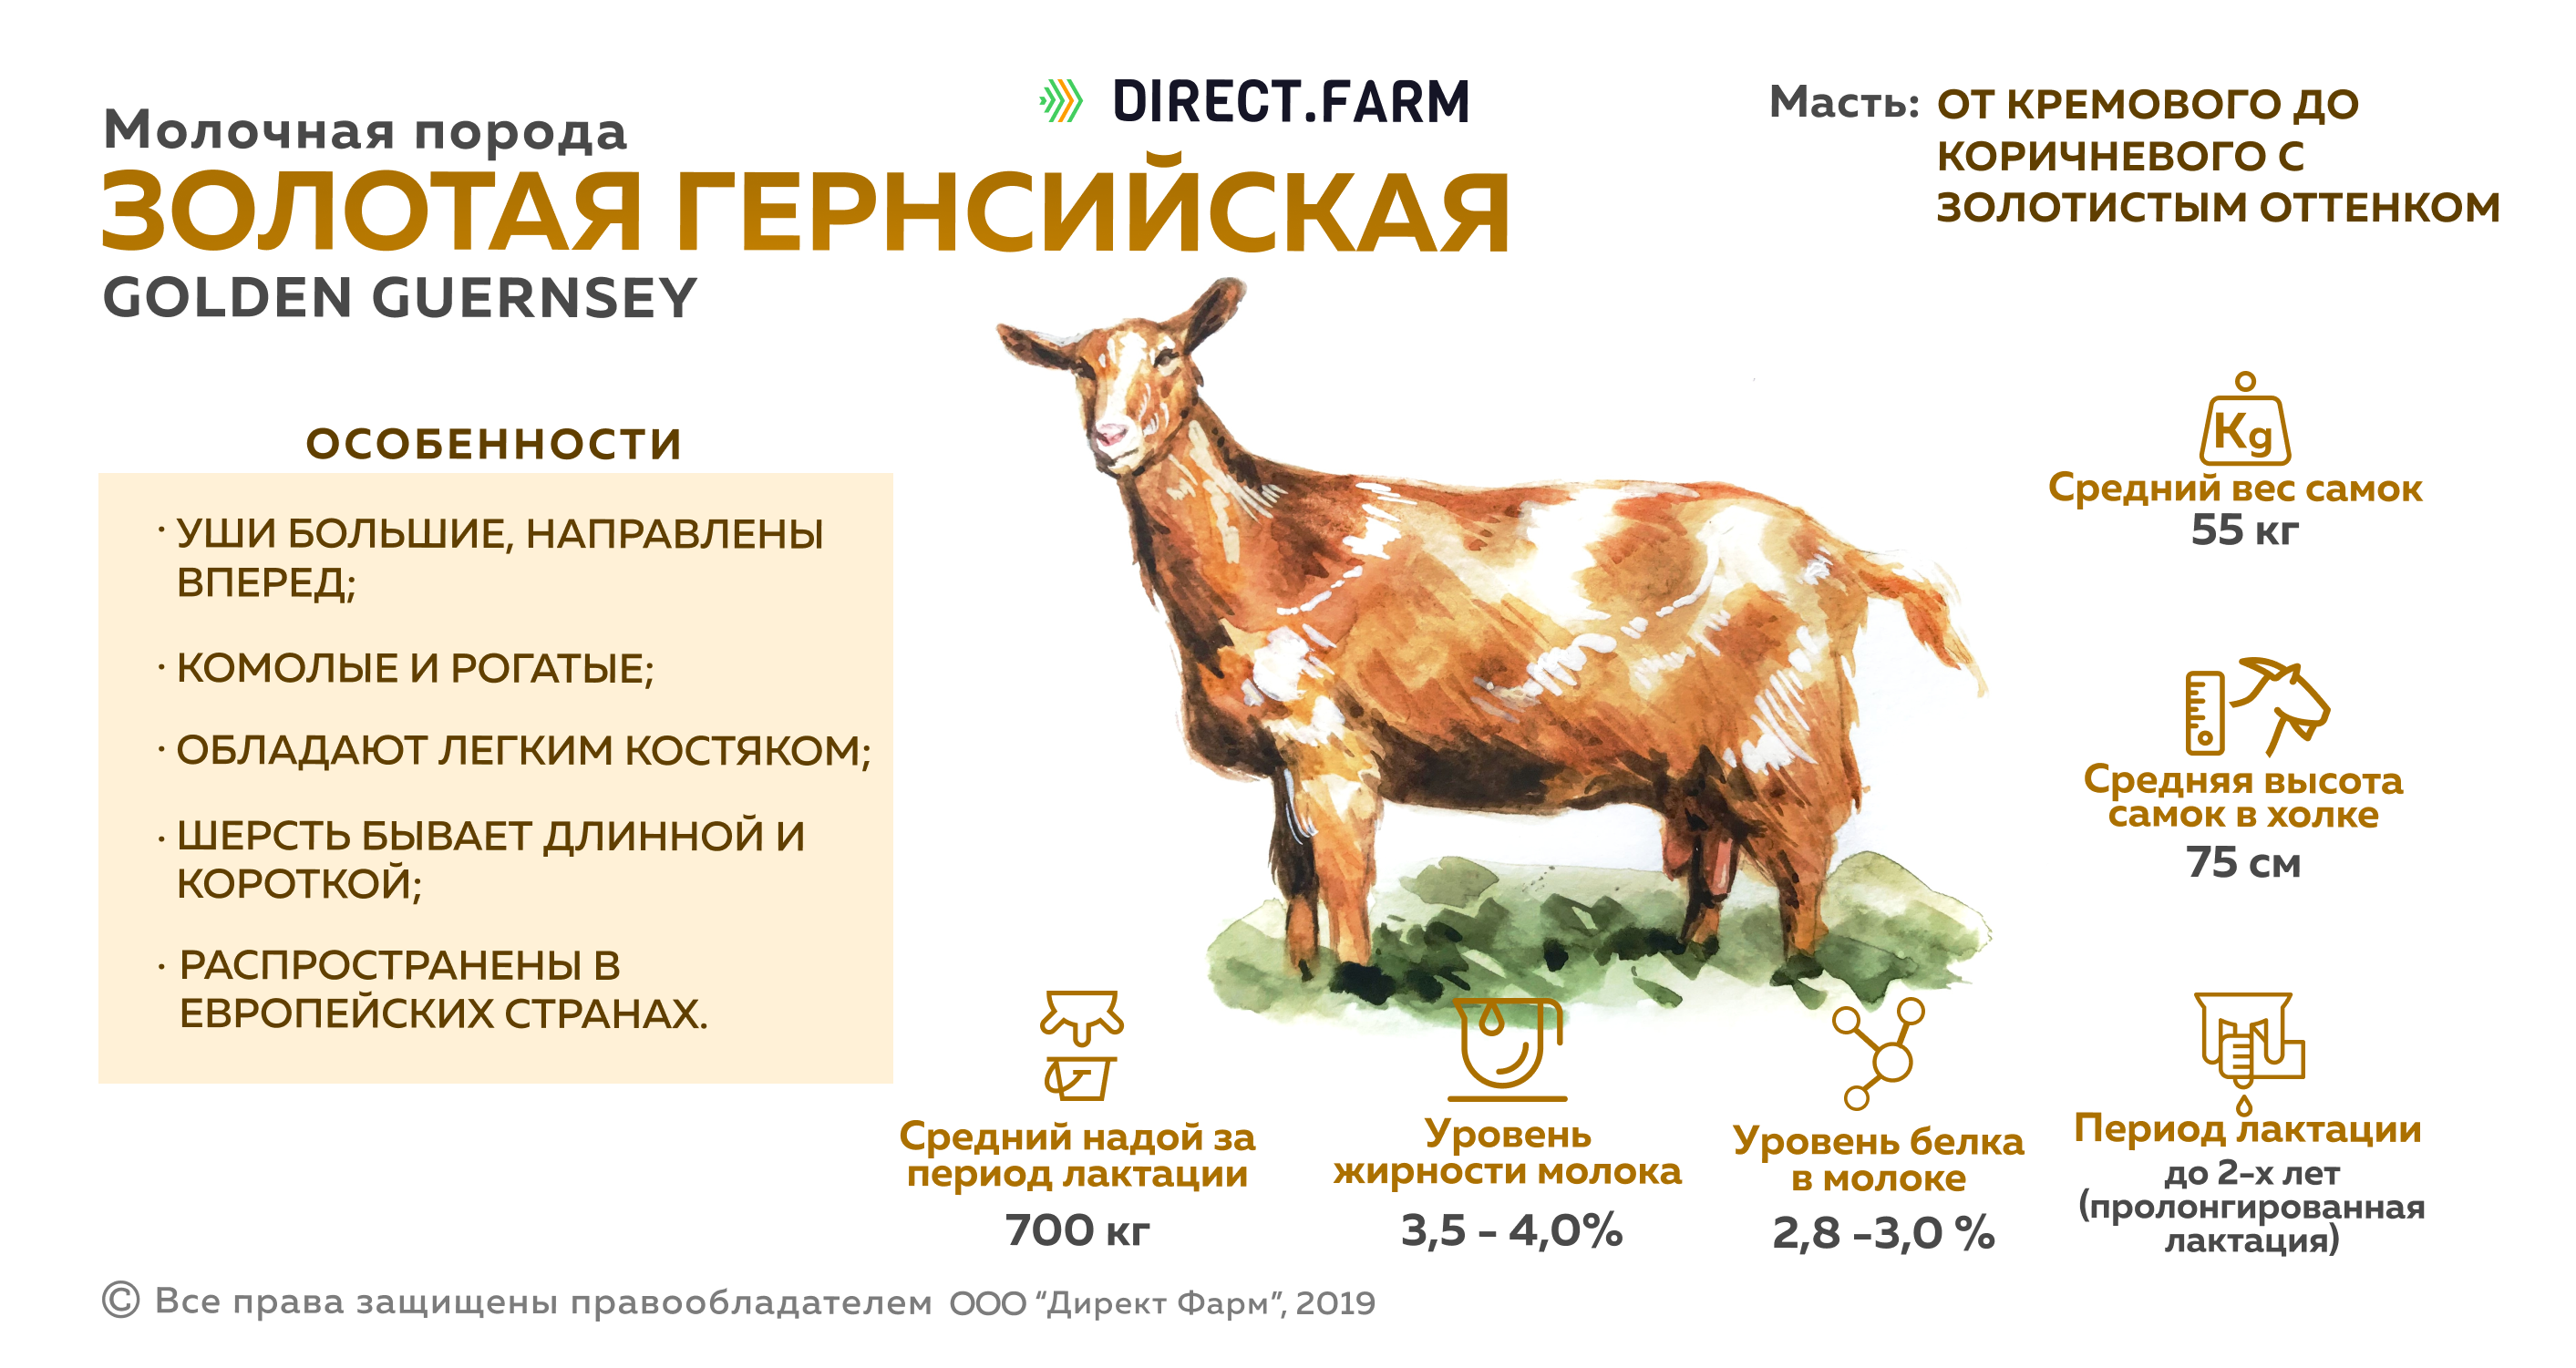 Характеристика пород коз. Продуктивность молока пород коз. Золотая Гернсийская порода коз. Молочные породы коз сравнительная таблица. Таблица продуктивности коз.